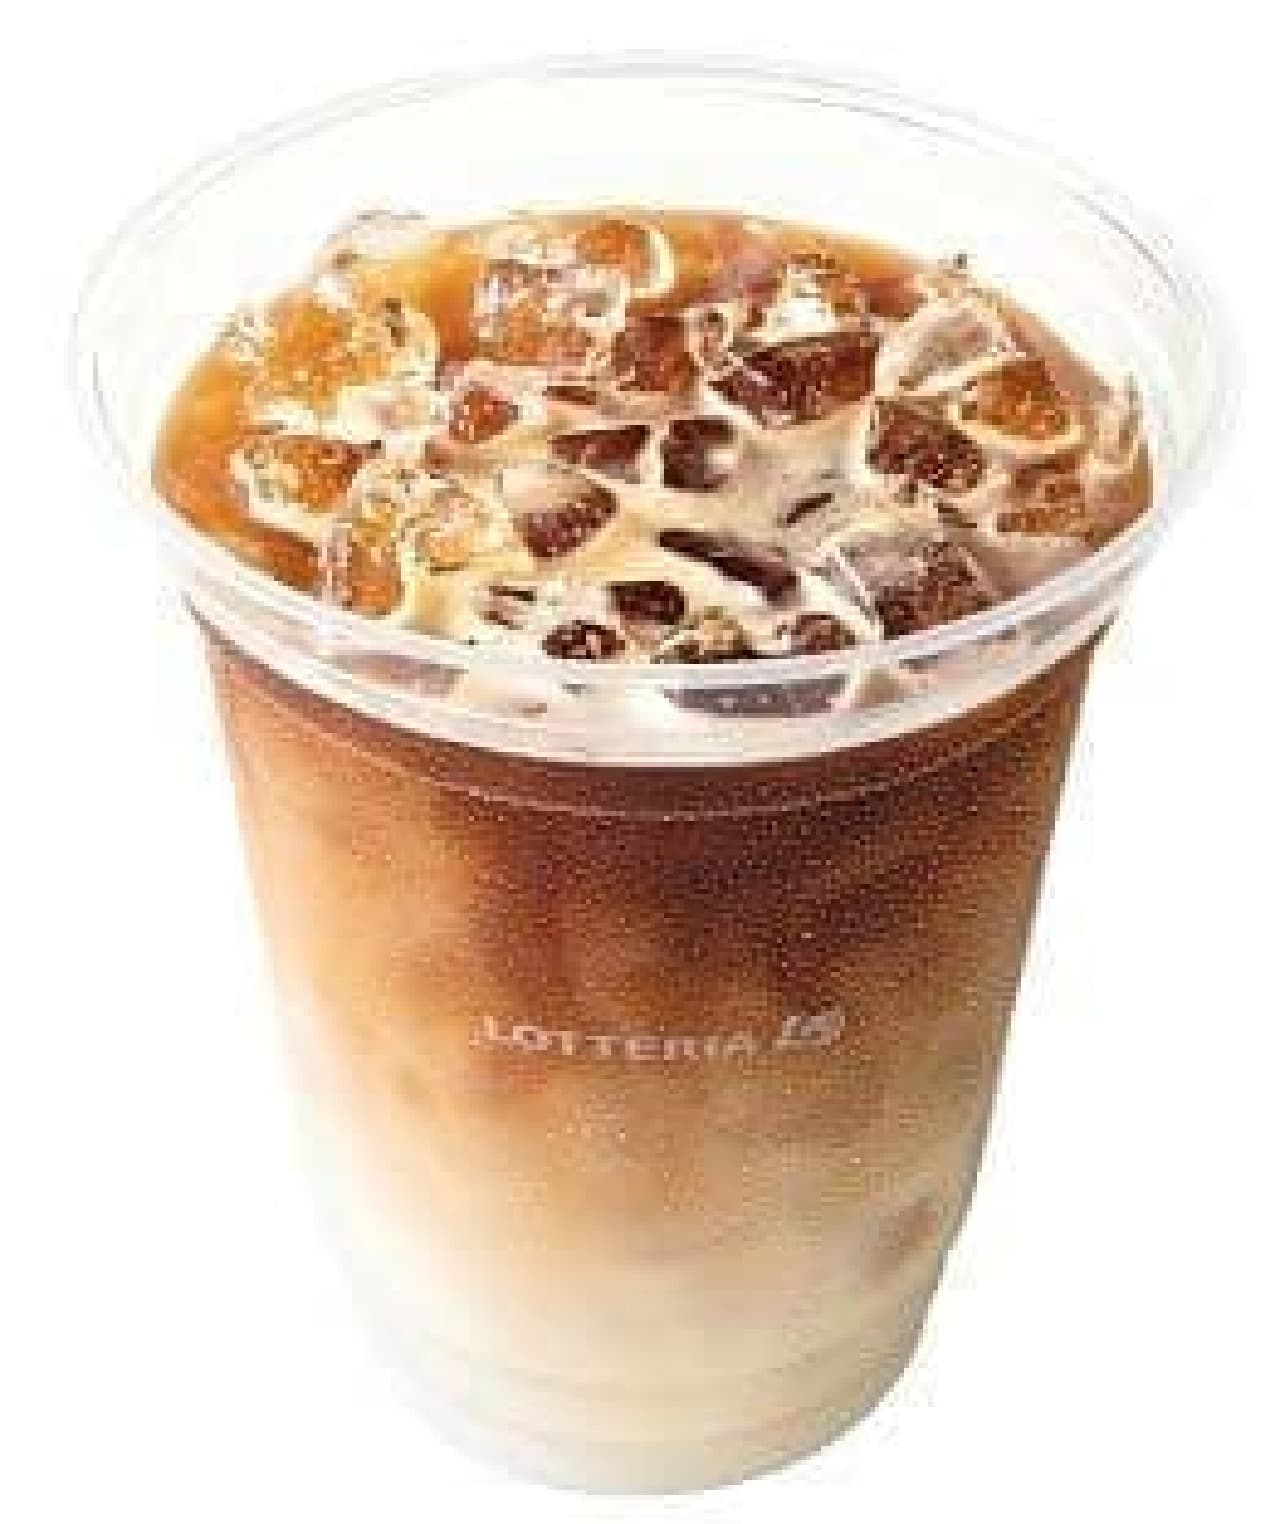 Lotteria "Ice Cafe Latte"